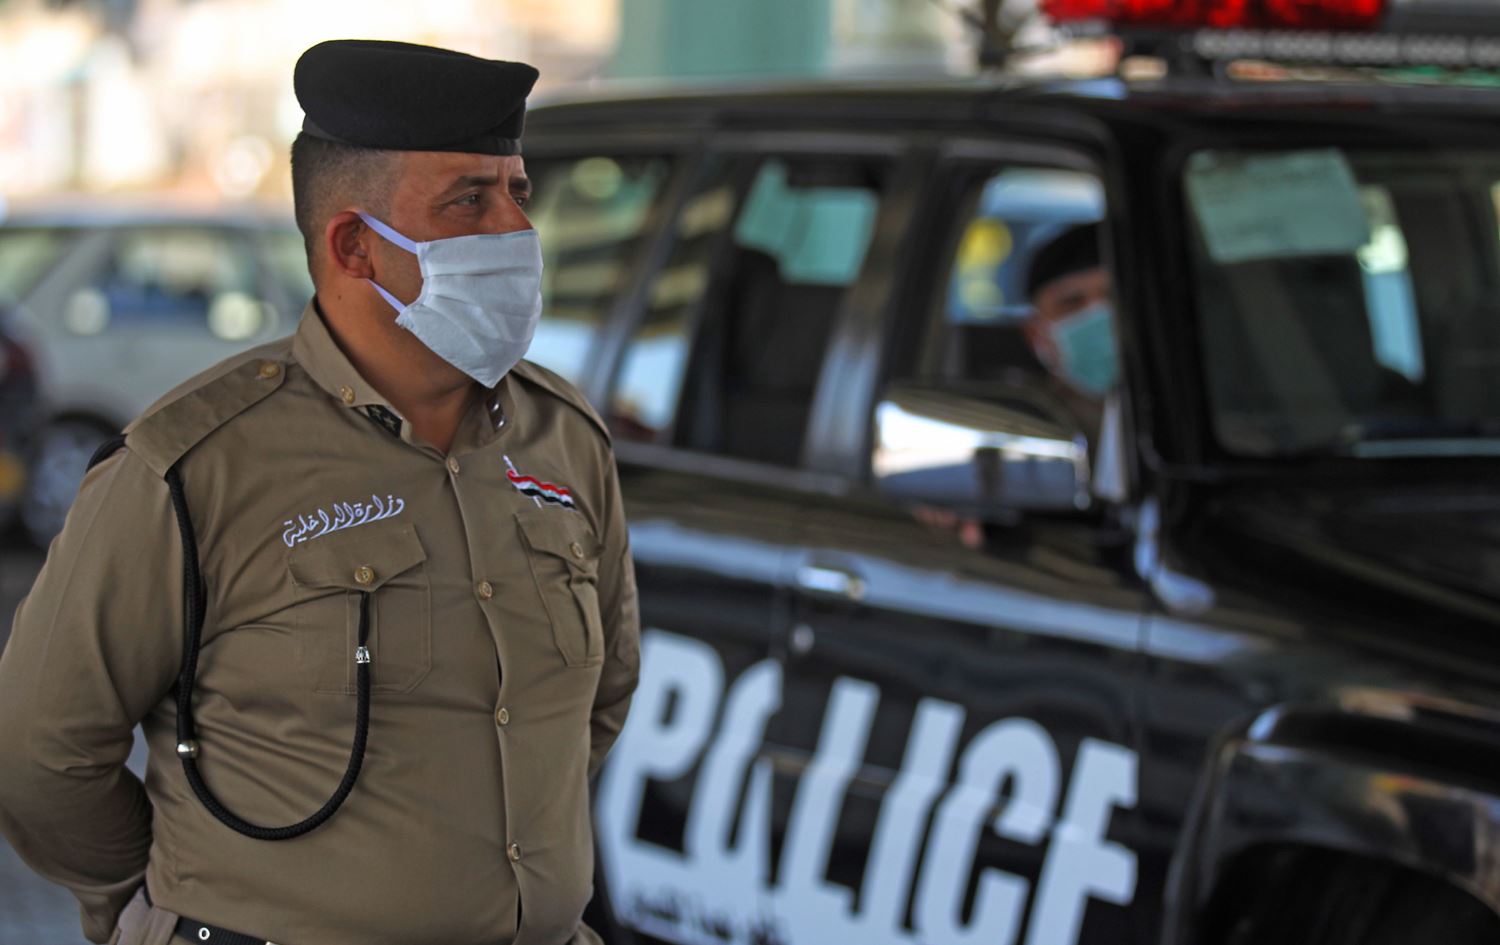 شرطة بغداد تكشف حقيقة وجود "خلل" في تخصيصات الترقيات والعلاوات